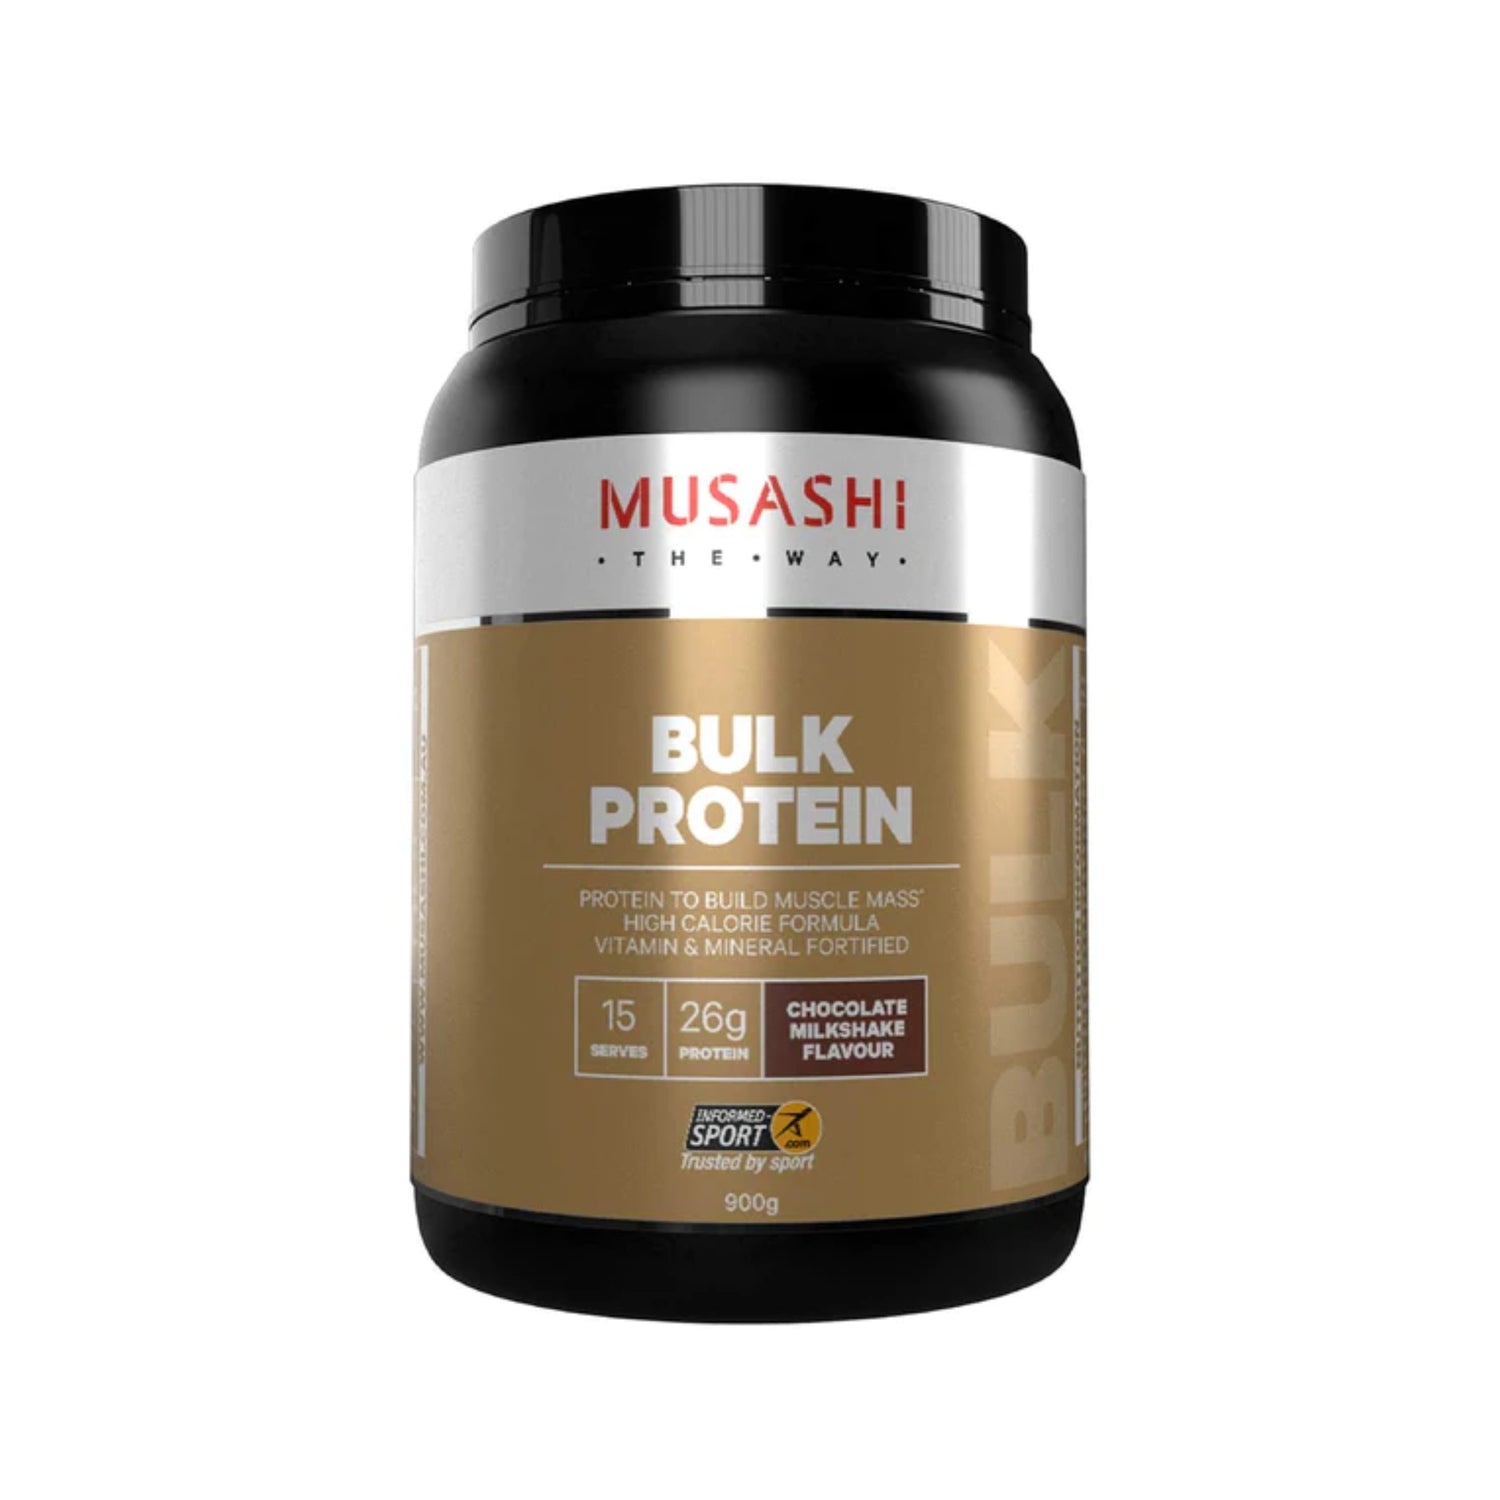 Musashi Bulk Protein Protein Powder Mass Gainer